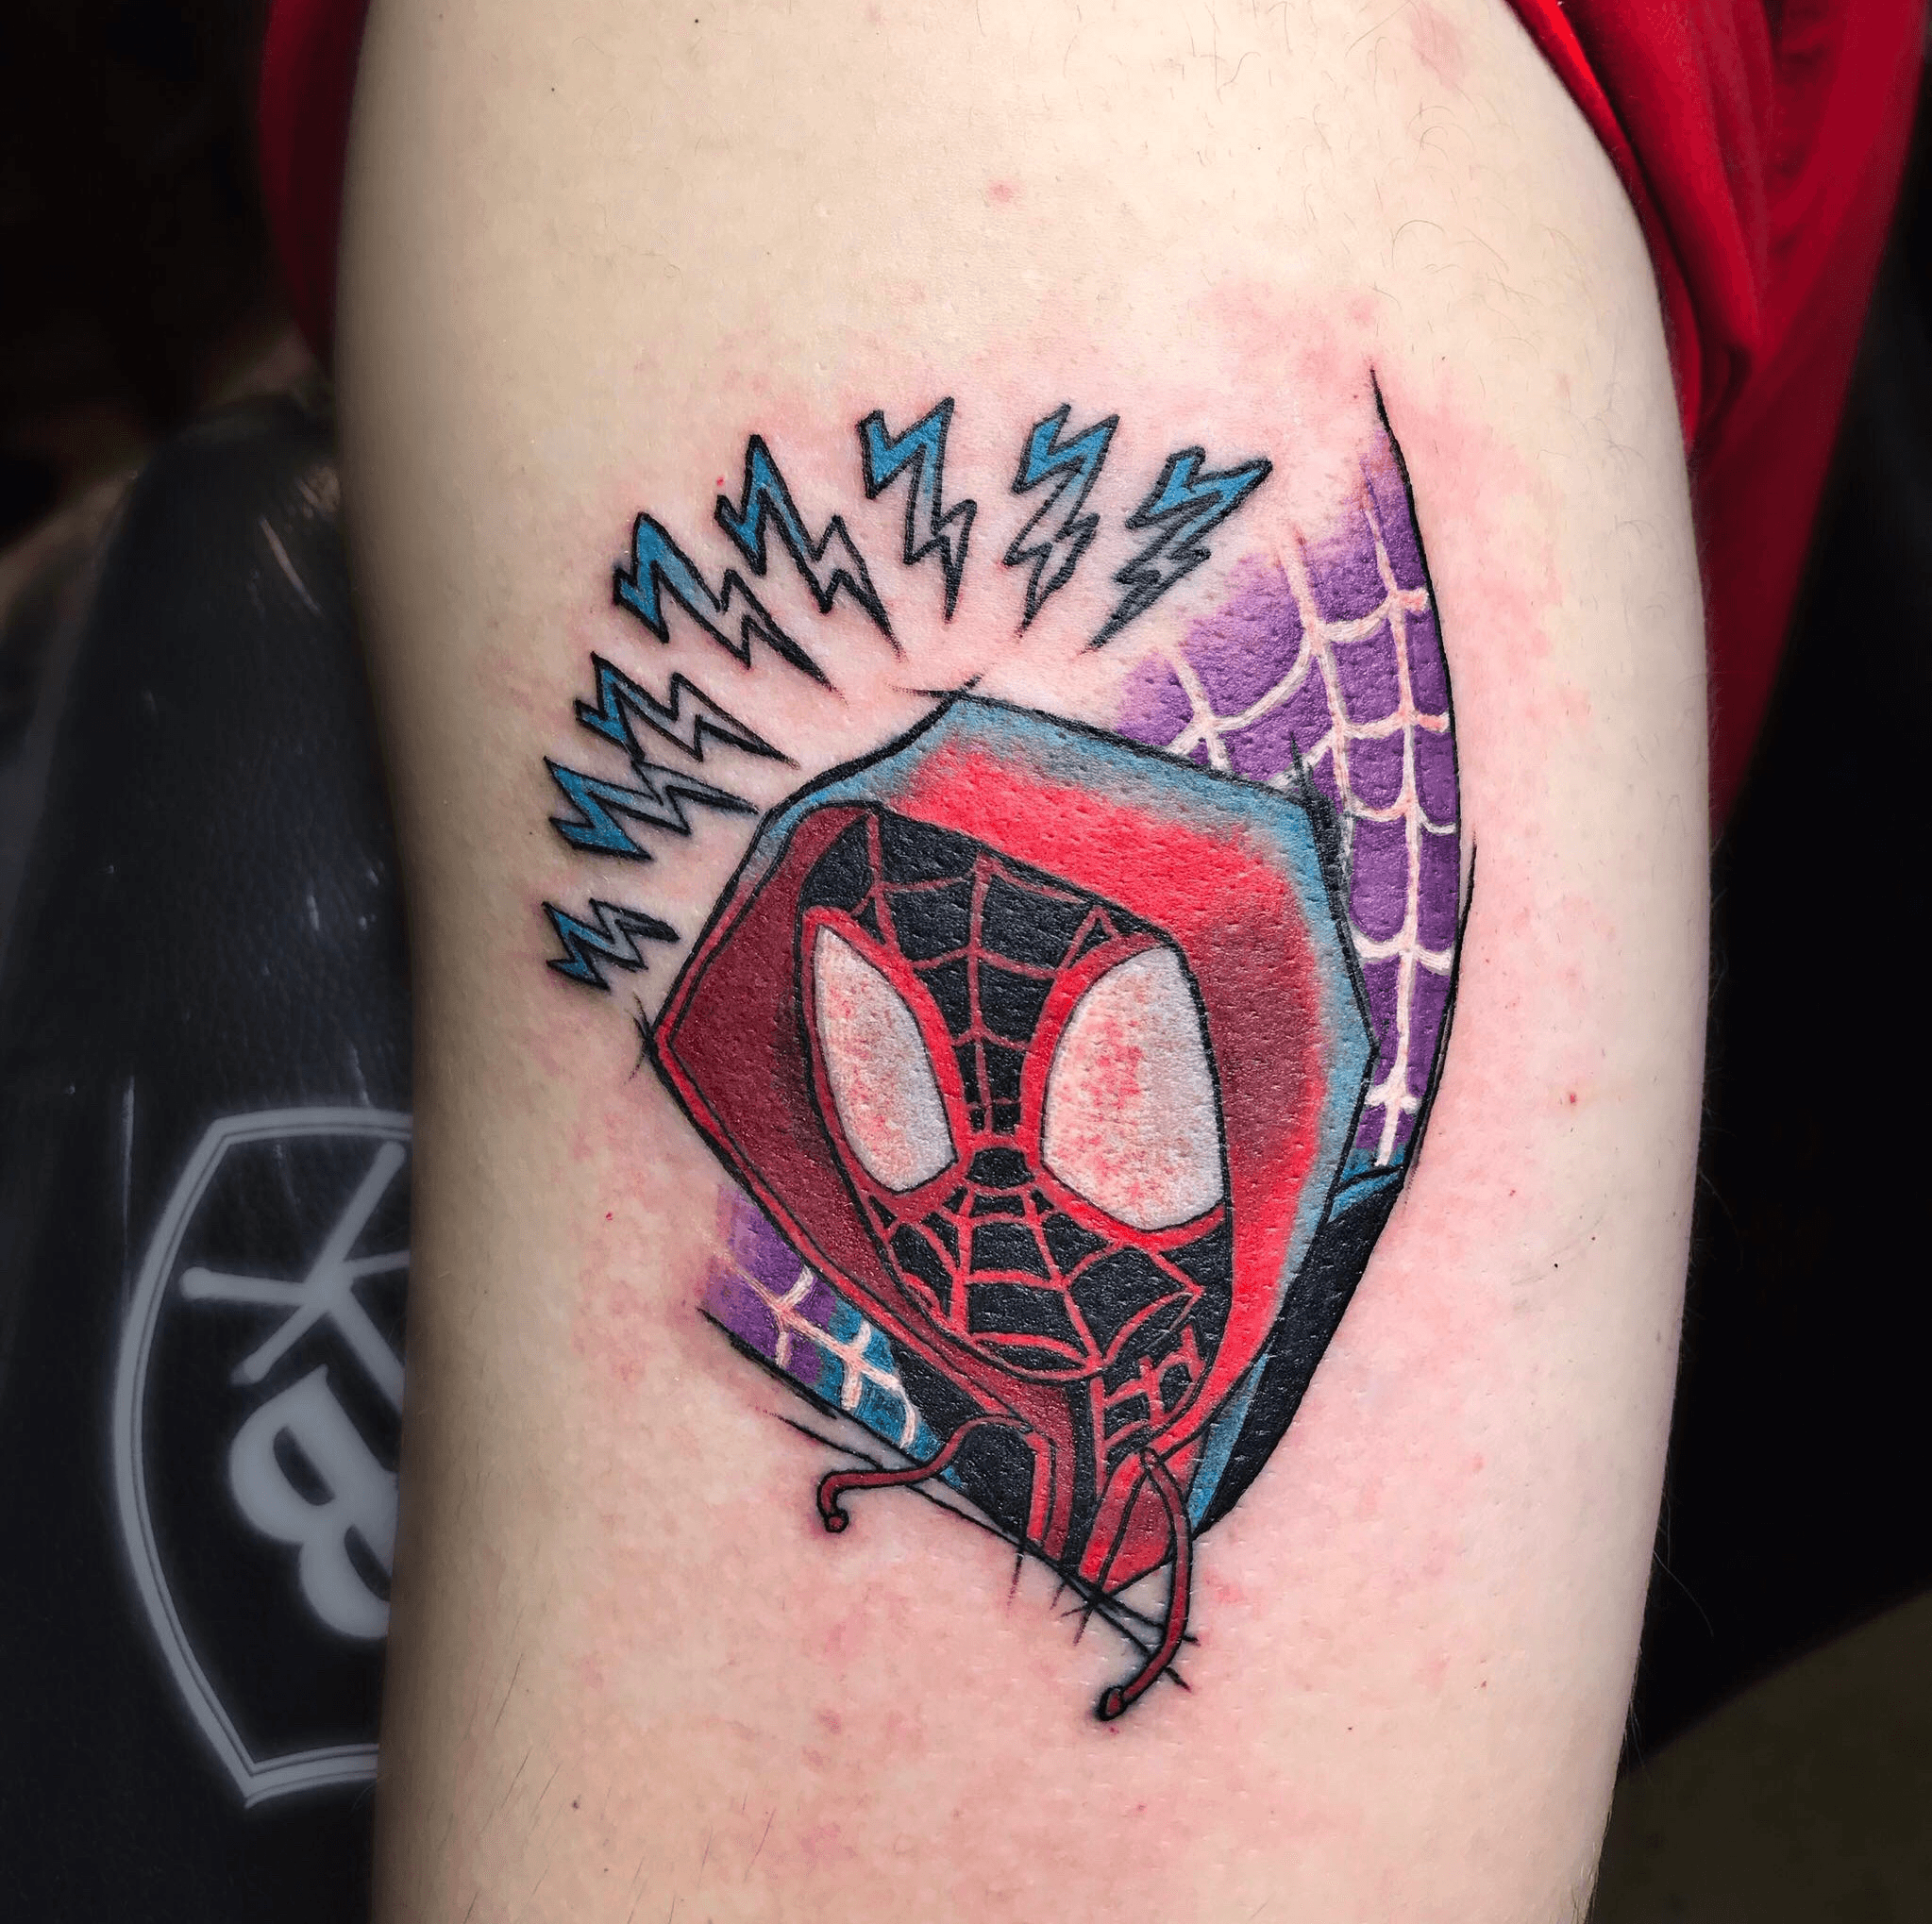 Spider Man Tattoo  InkStyleMag